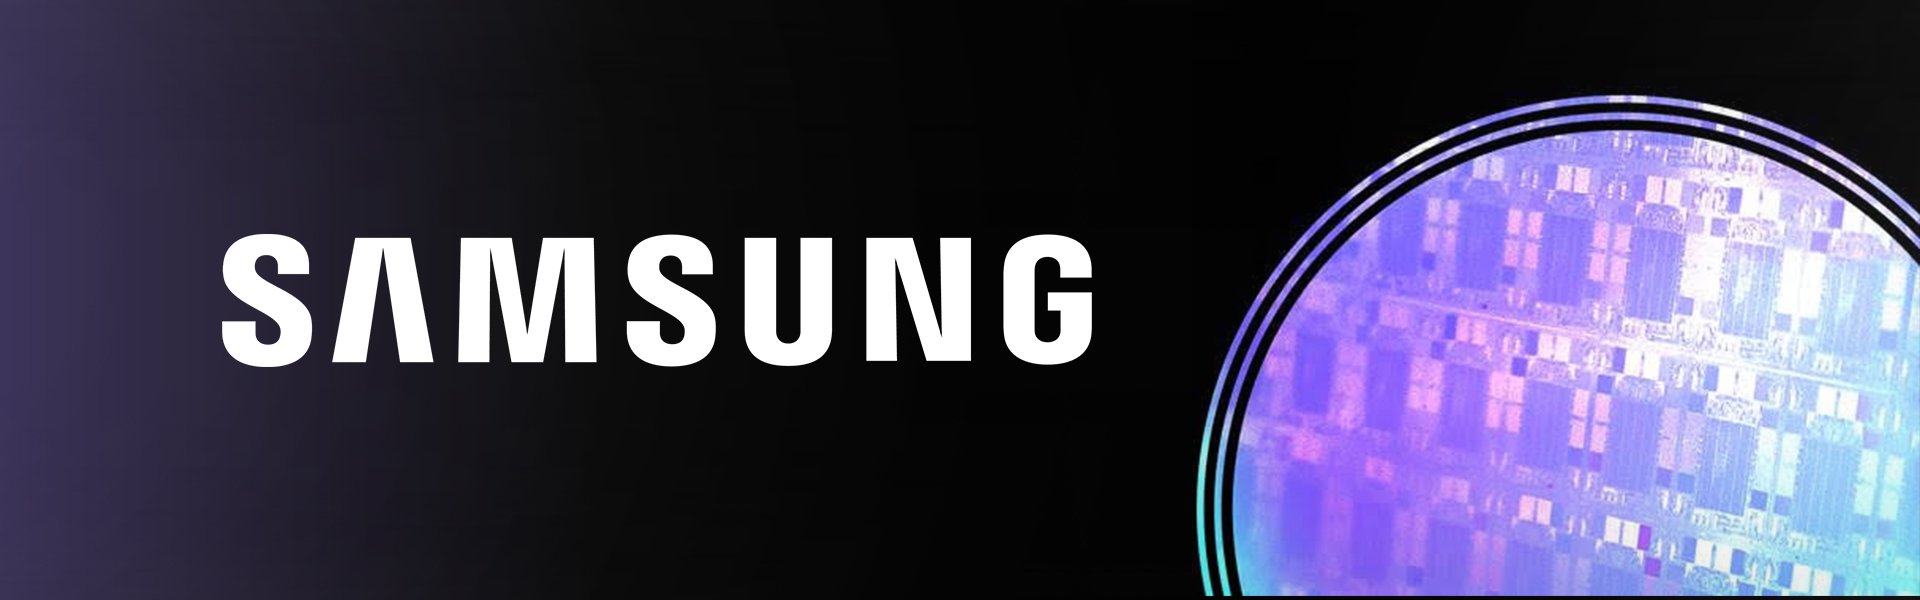 Samsung Galaxy Tab S3 T820 (2017) Samsung 